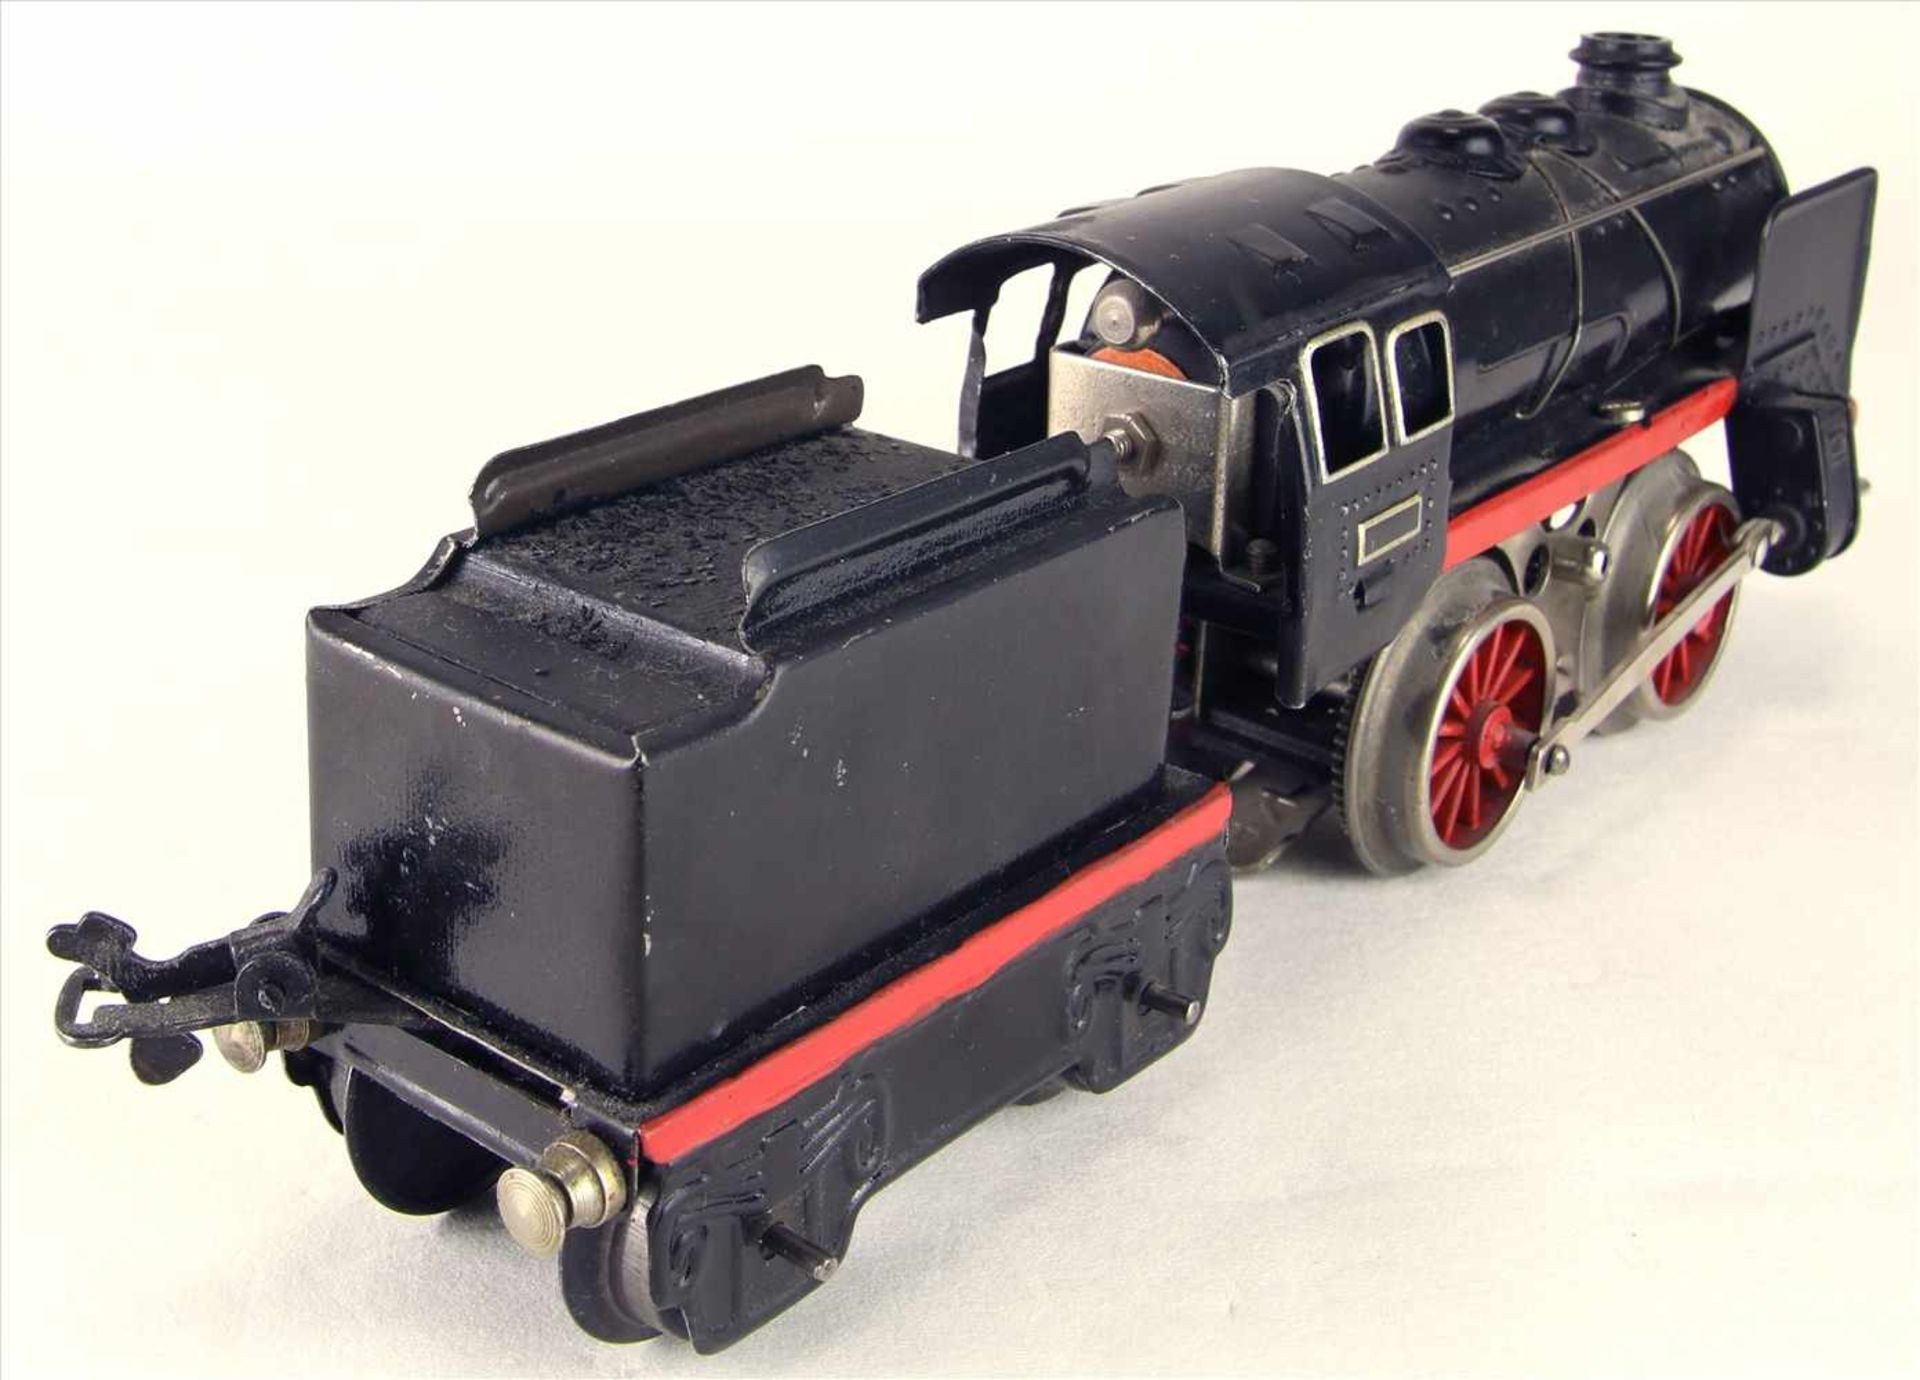 Dampflokomotive Spur 0Karl Bub späte 1940-er Jahre. Dampflok mit Tender. Elektroantrieb. - Bild 3 aus 5